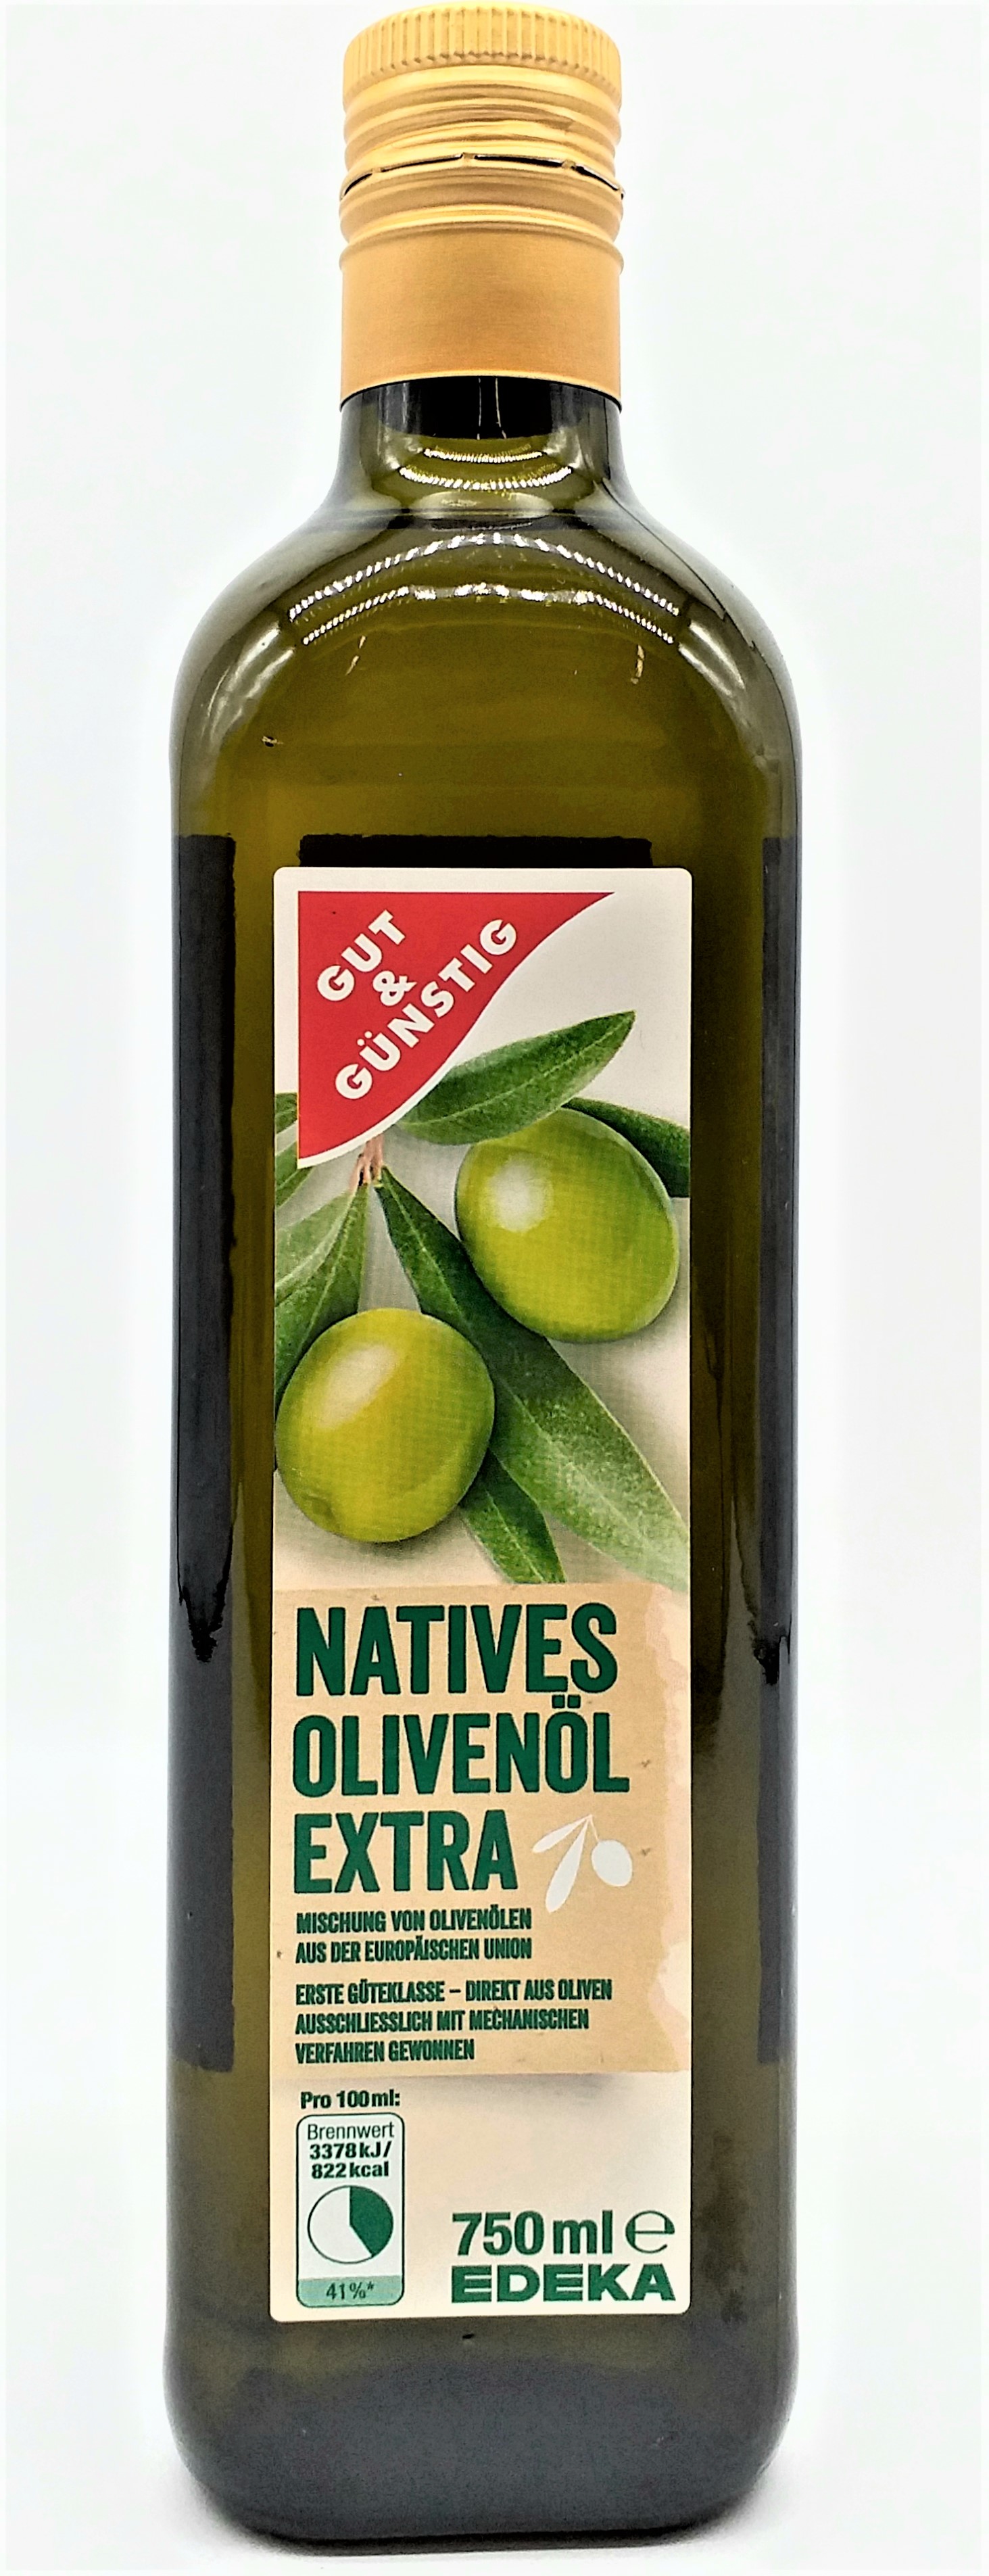 G&G Natives Olivenöl extra 750ml